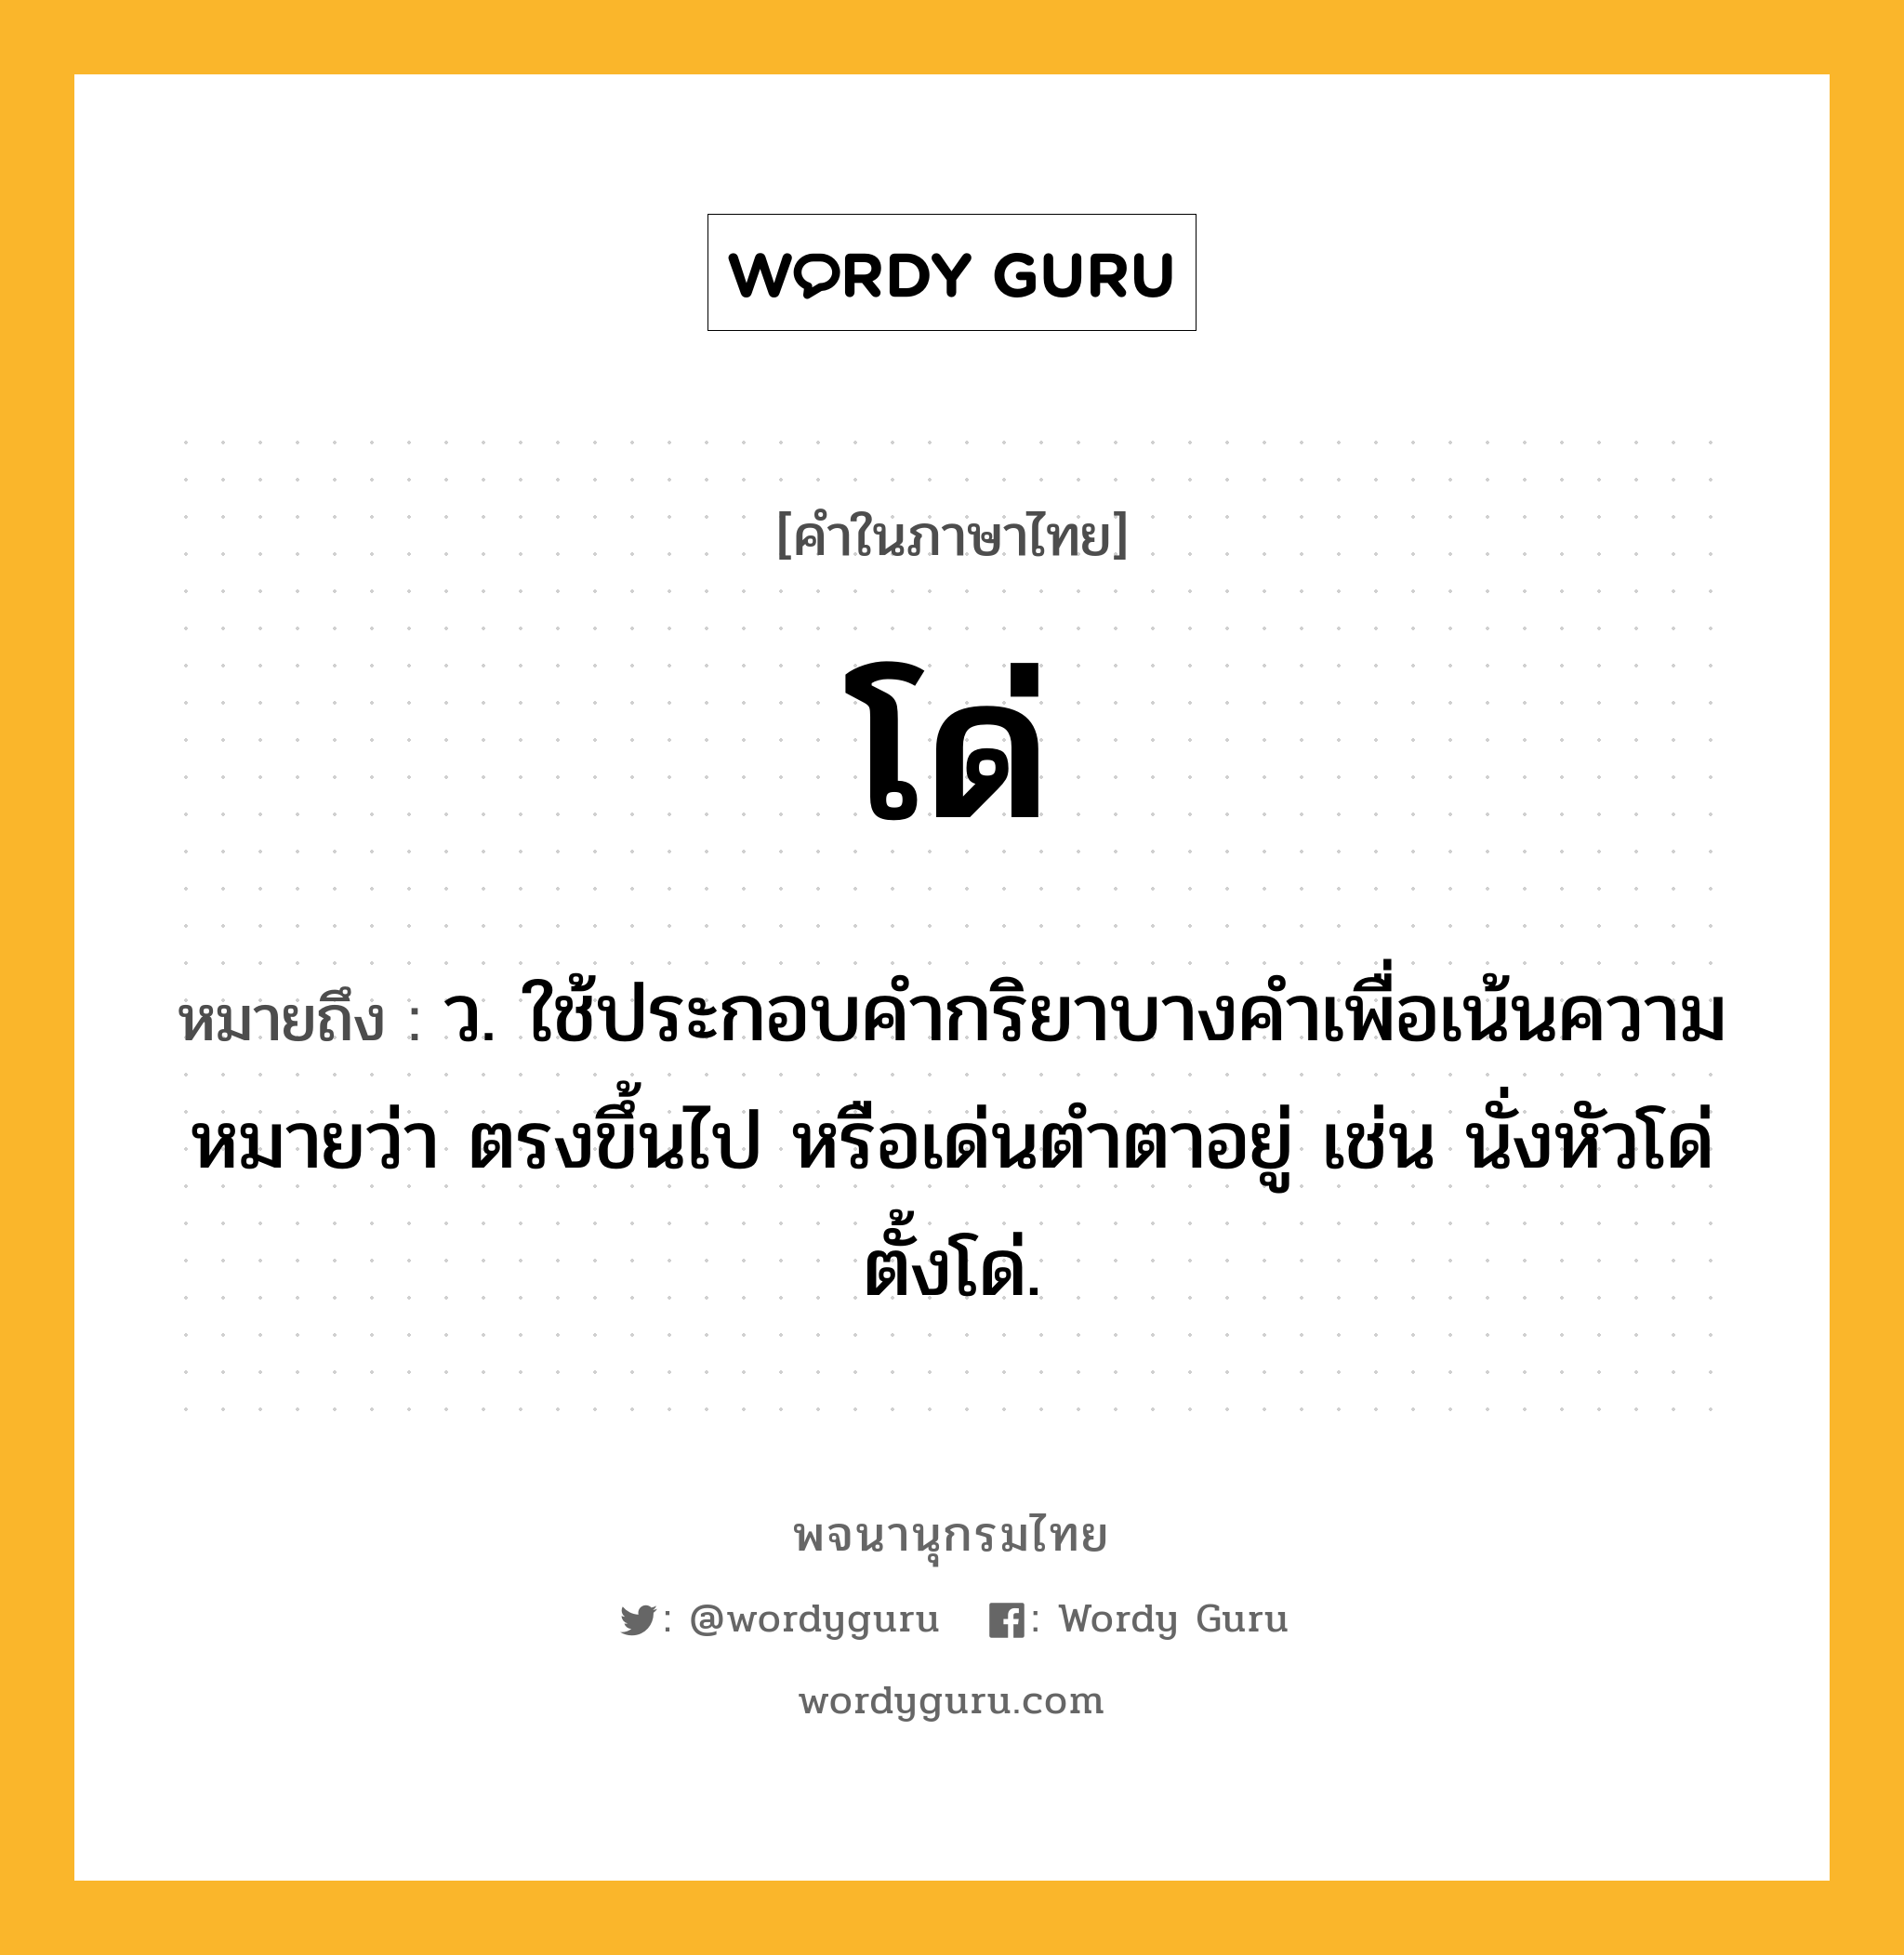 โด่ หมายถึงอะไร?, คำในภาษาไทย โด่ หมายถึง ว. ใช้ประกอบคํากริยาบางคําเพื่อเน้นความหมายว่า ตรงขึ้นไป หรือเด่นตําตาอยู่ เช่น นั่งหัวโด่ ตั้งโด่.